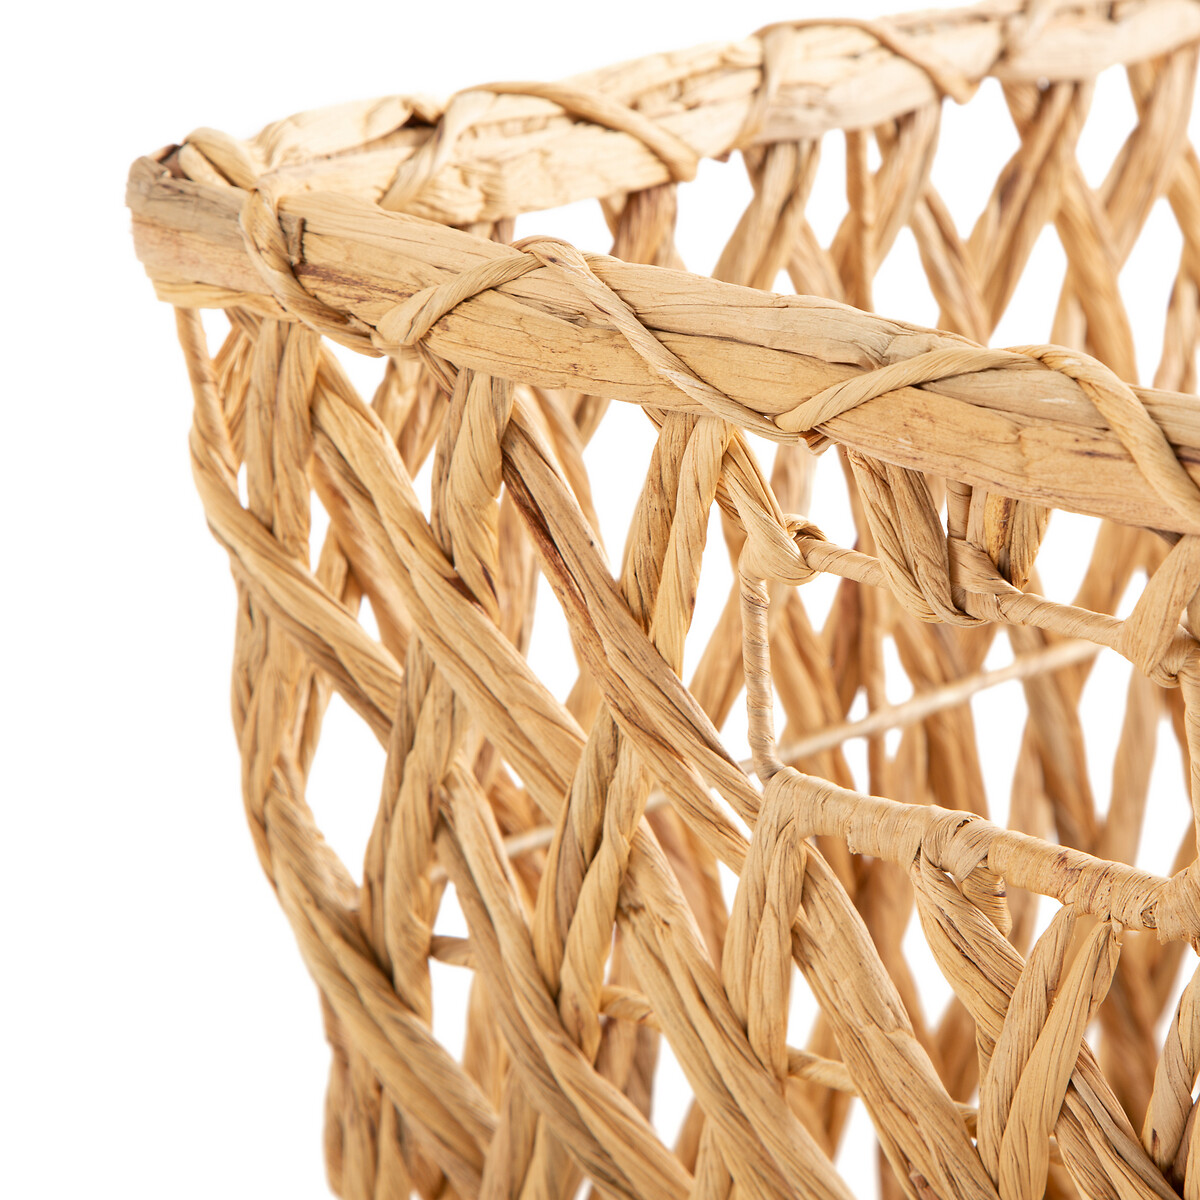 Product photograph of Massa Woven Storage Basket from La Redoute UK.